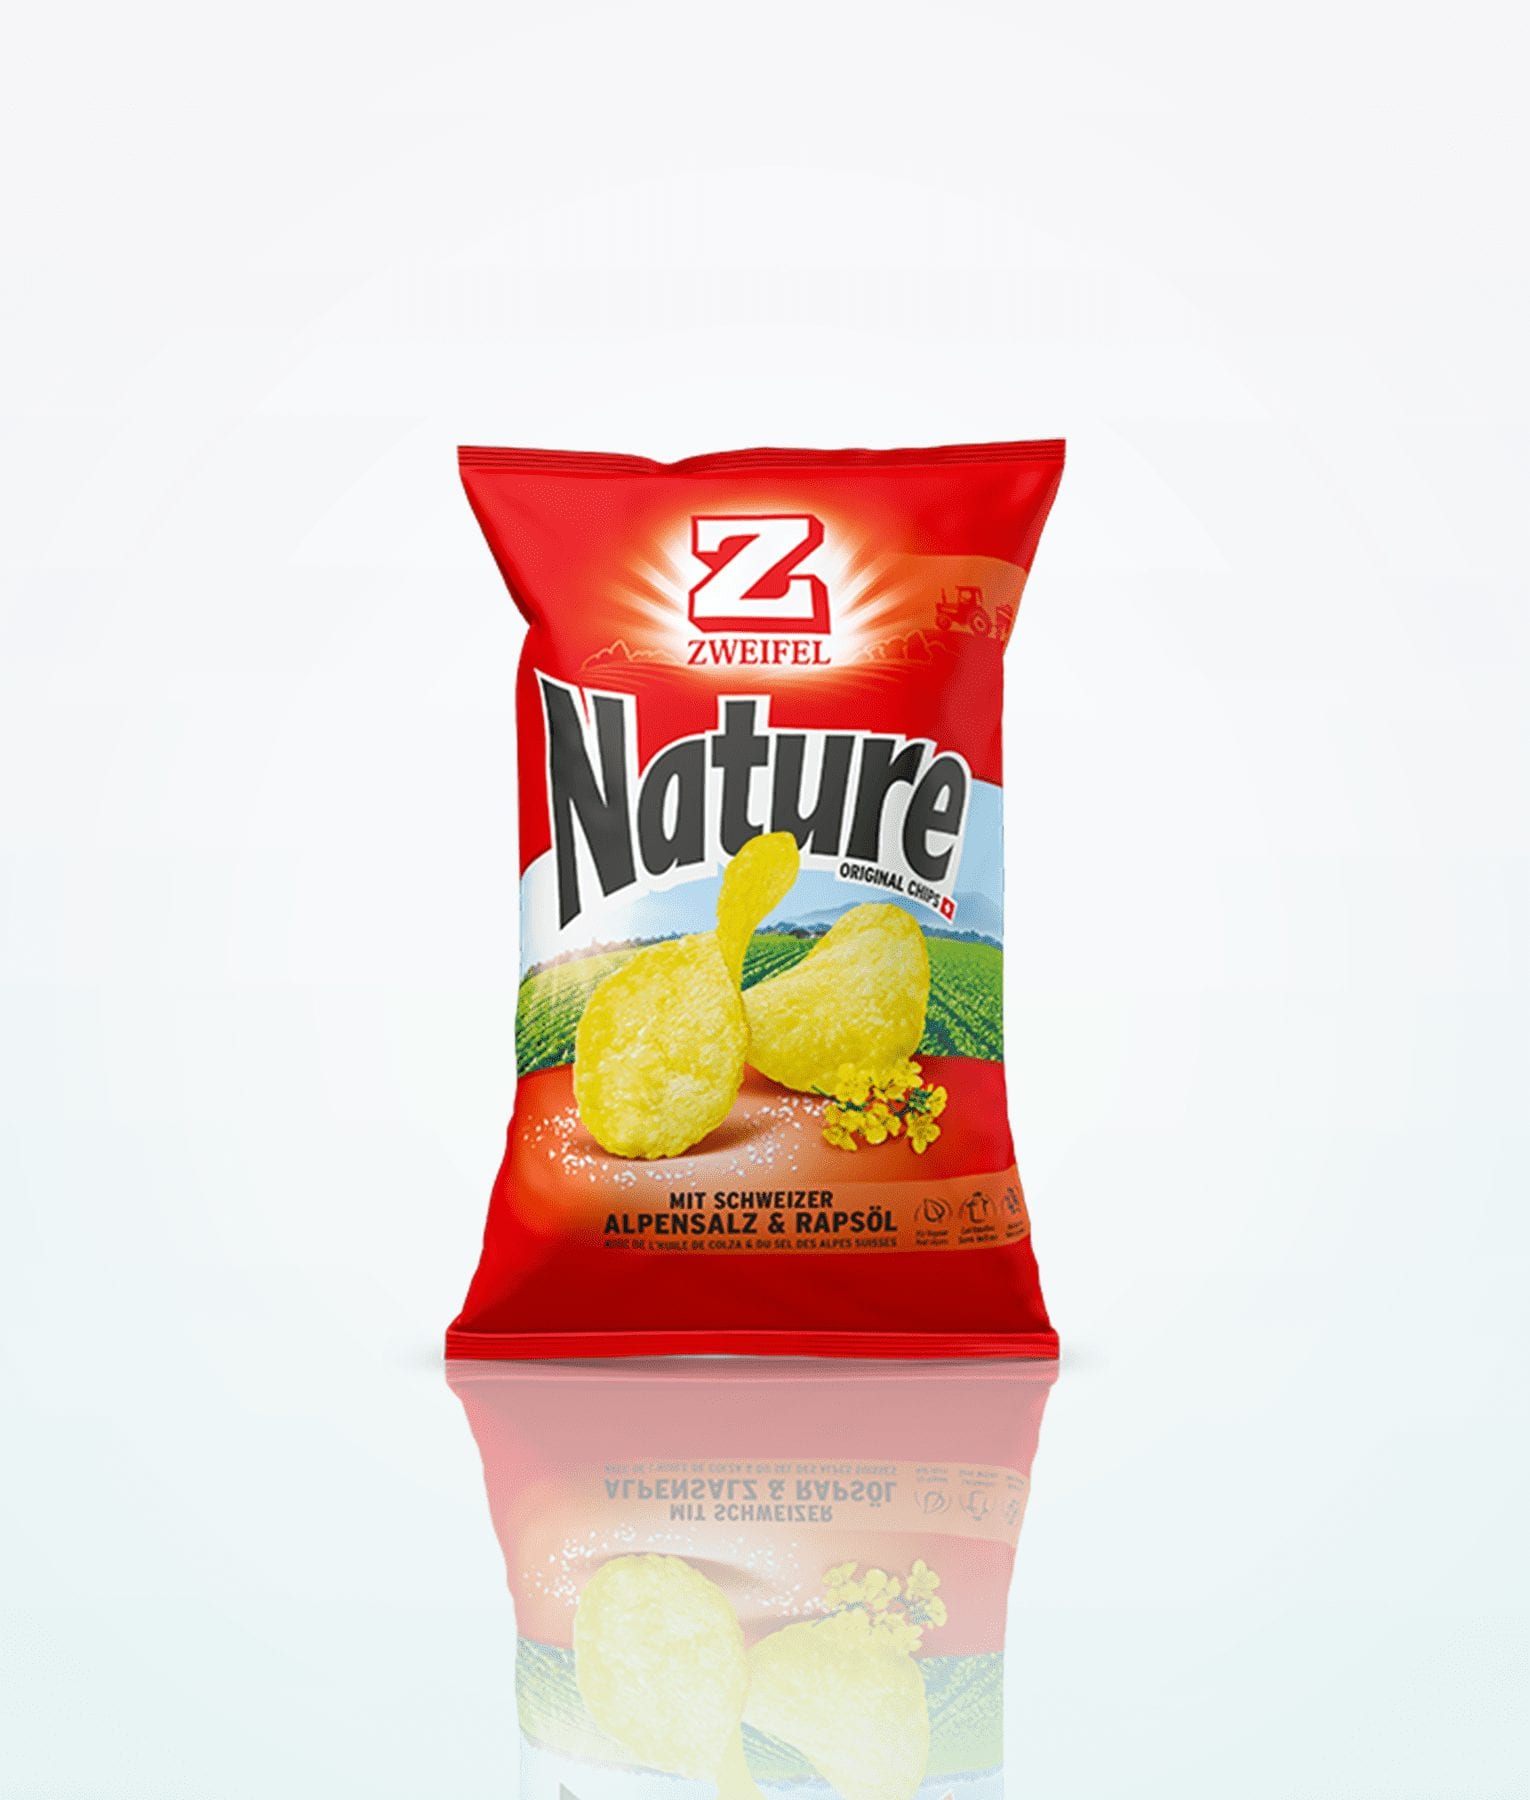 Zweifel Nature Chips originale 185g